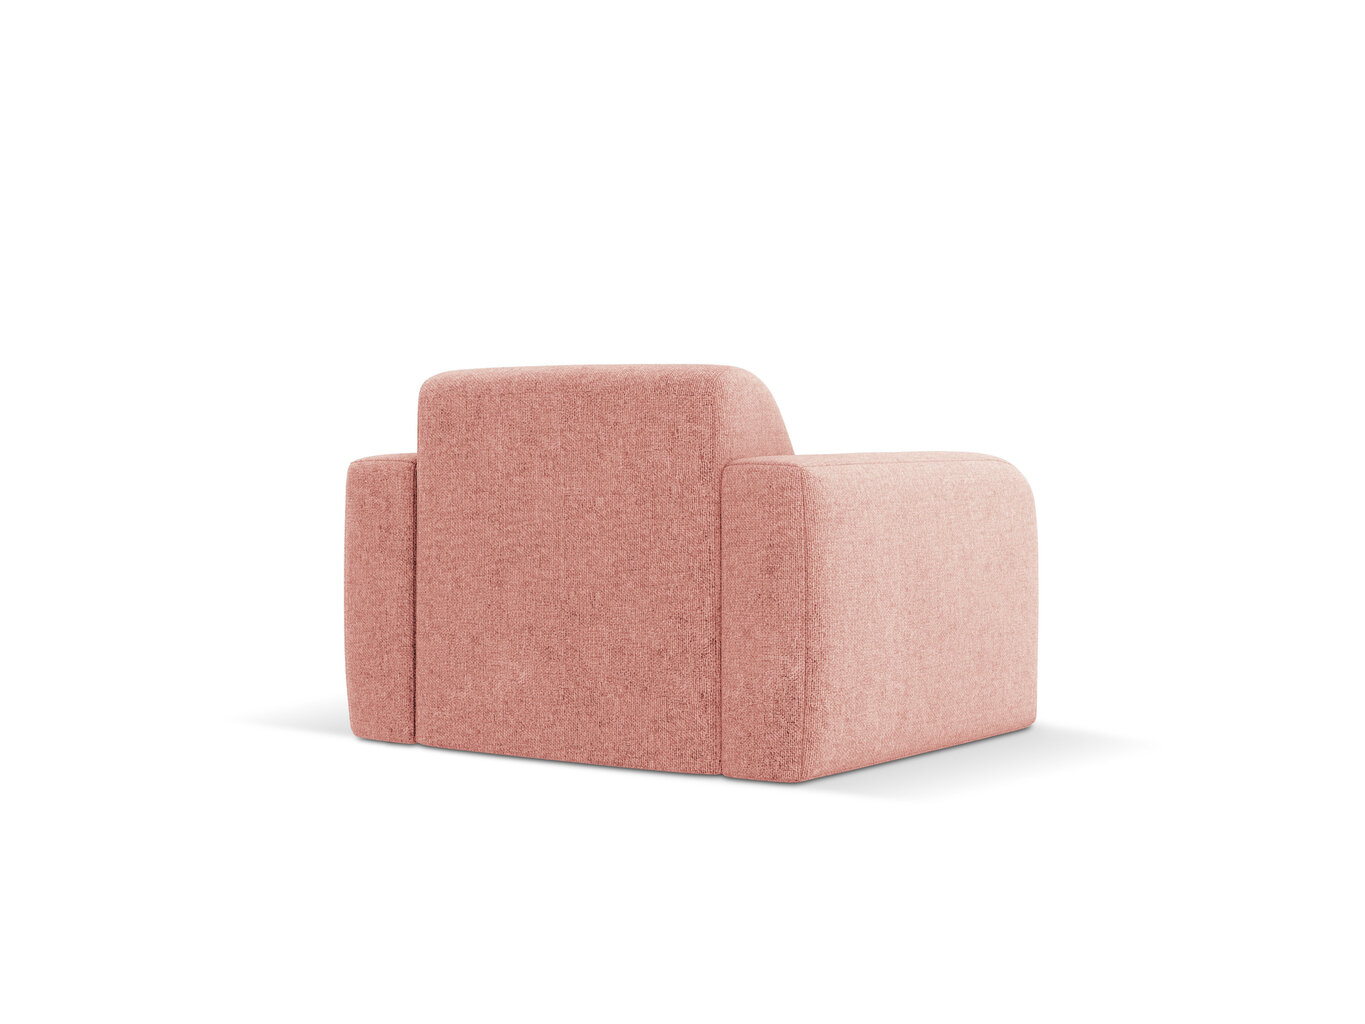 Krēsls Windsor & Co Lola, rozā cena un informācija | Atpūtas krēsli | 220.lv